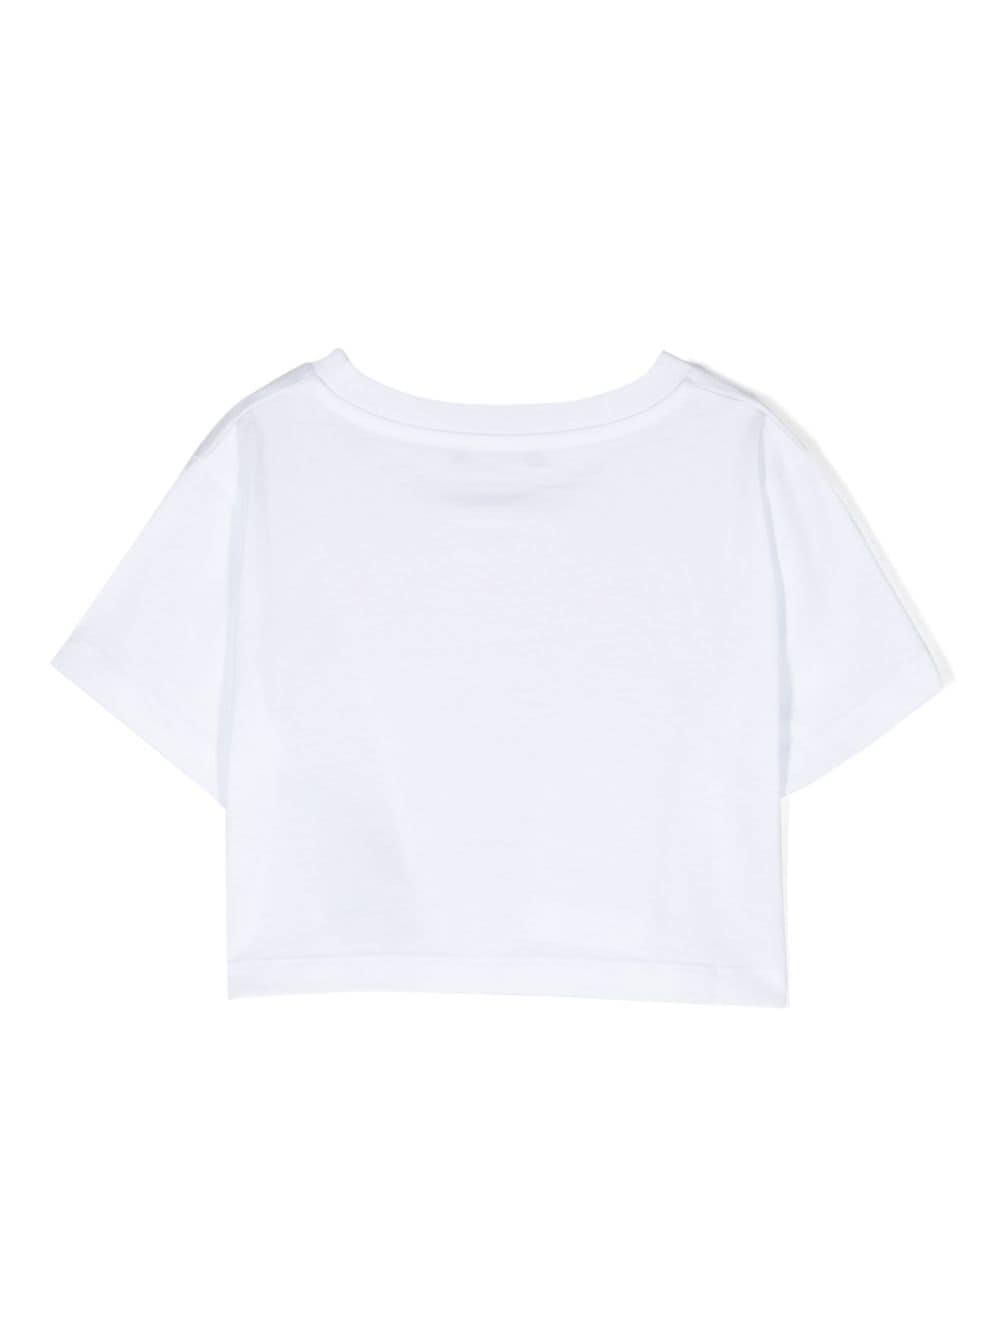 T-shirt fille blanc